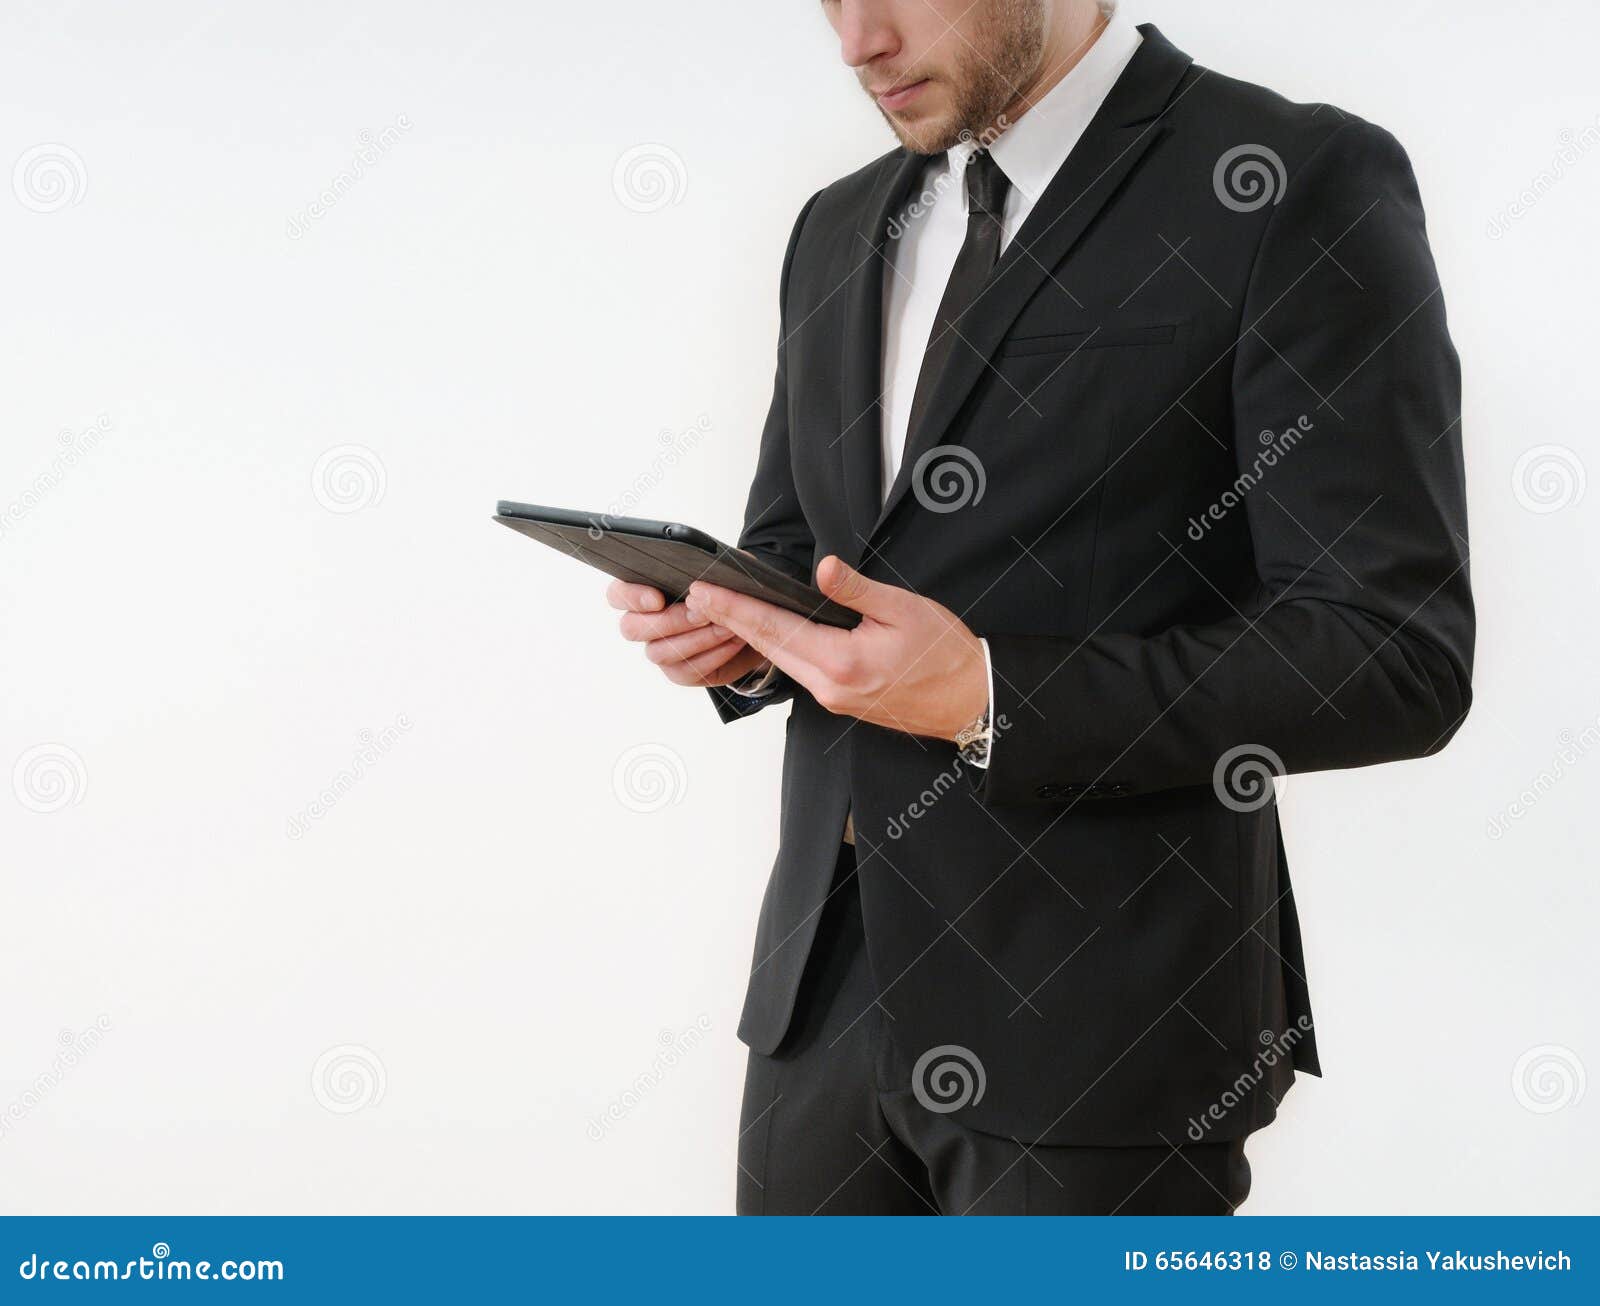 Sida för kropp för affärsman i den svarta dräkten som rymmer hans minnestavla på vit bakgrund; affärsidé